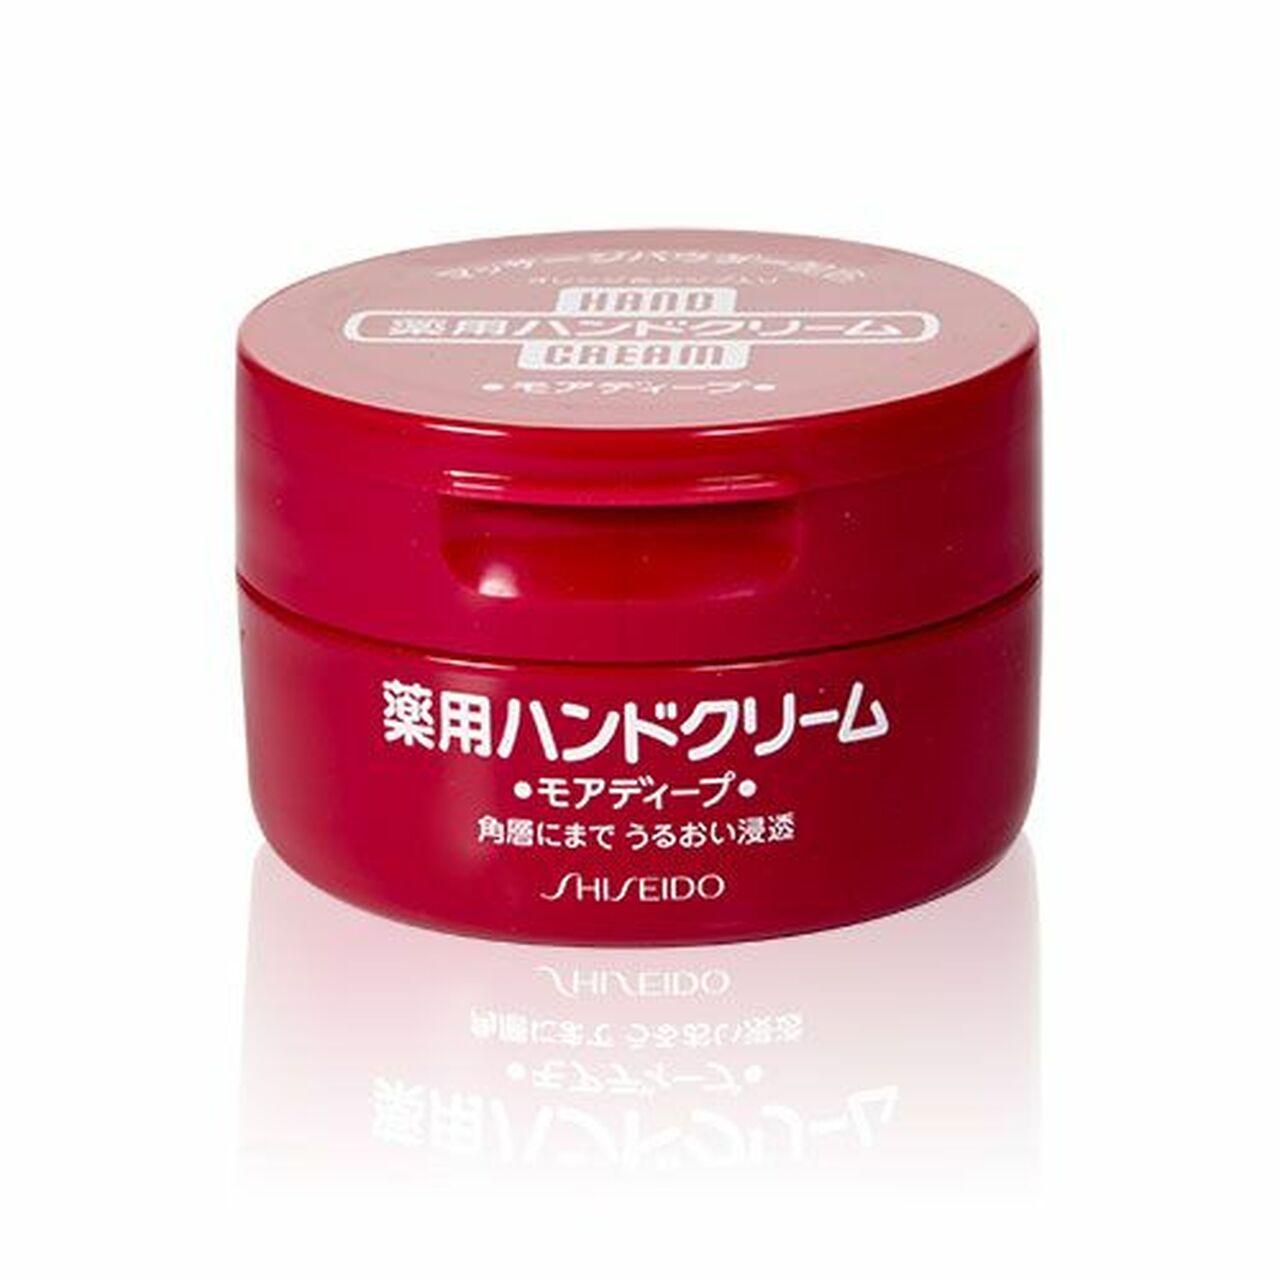 Shiseido Hand Cream 100g